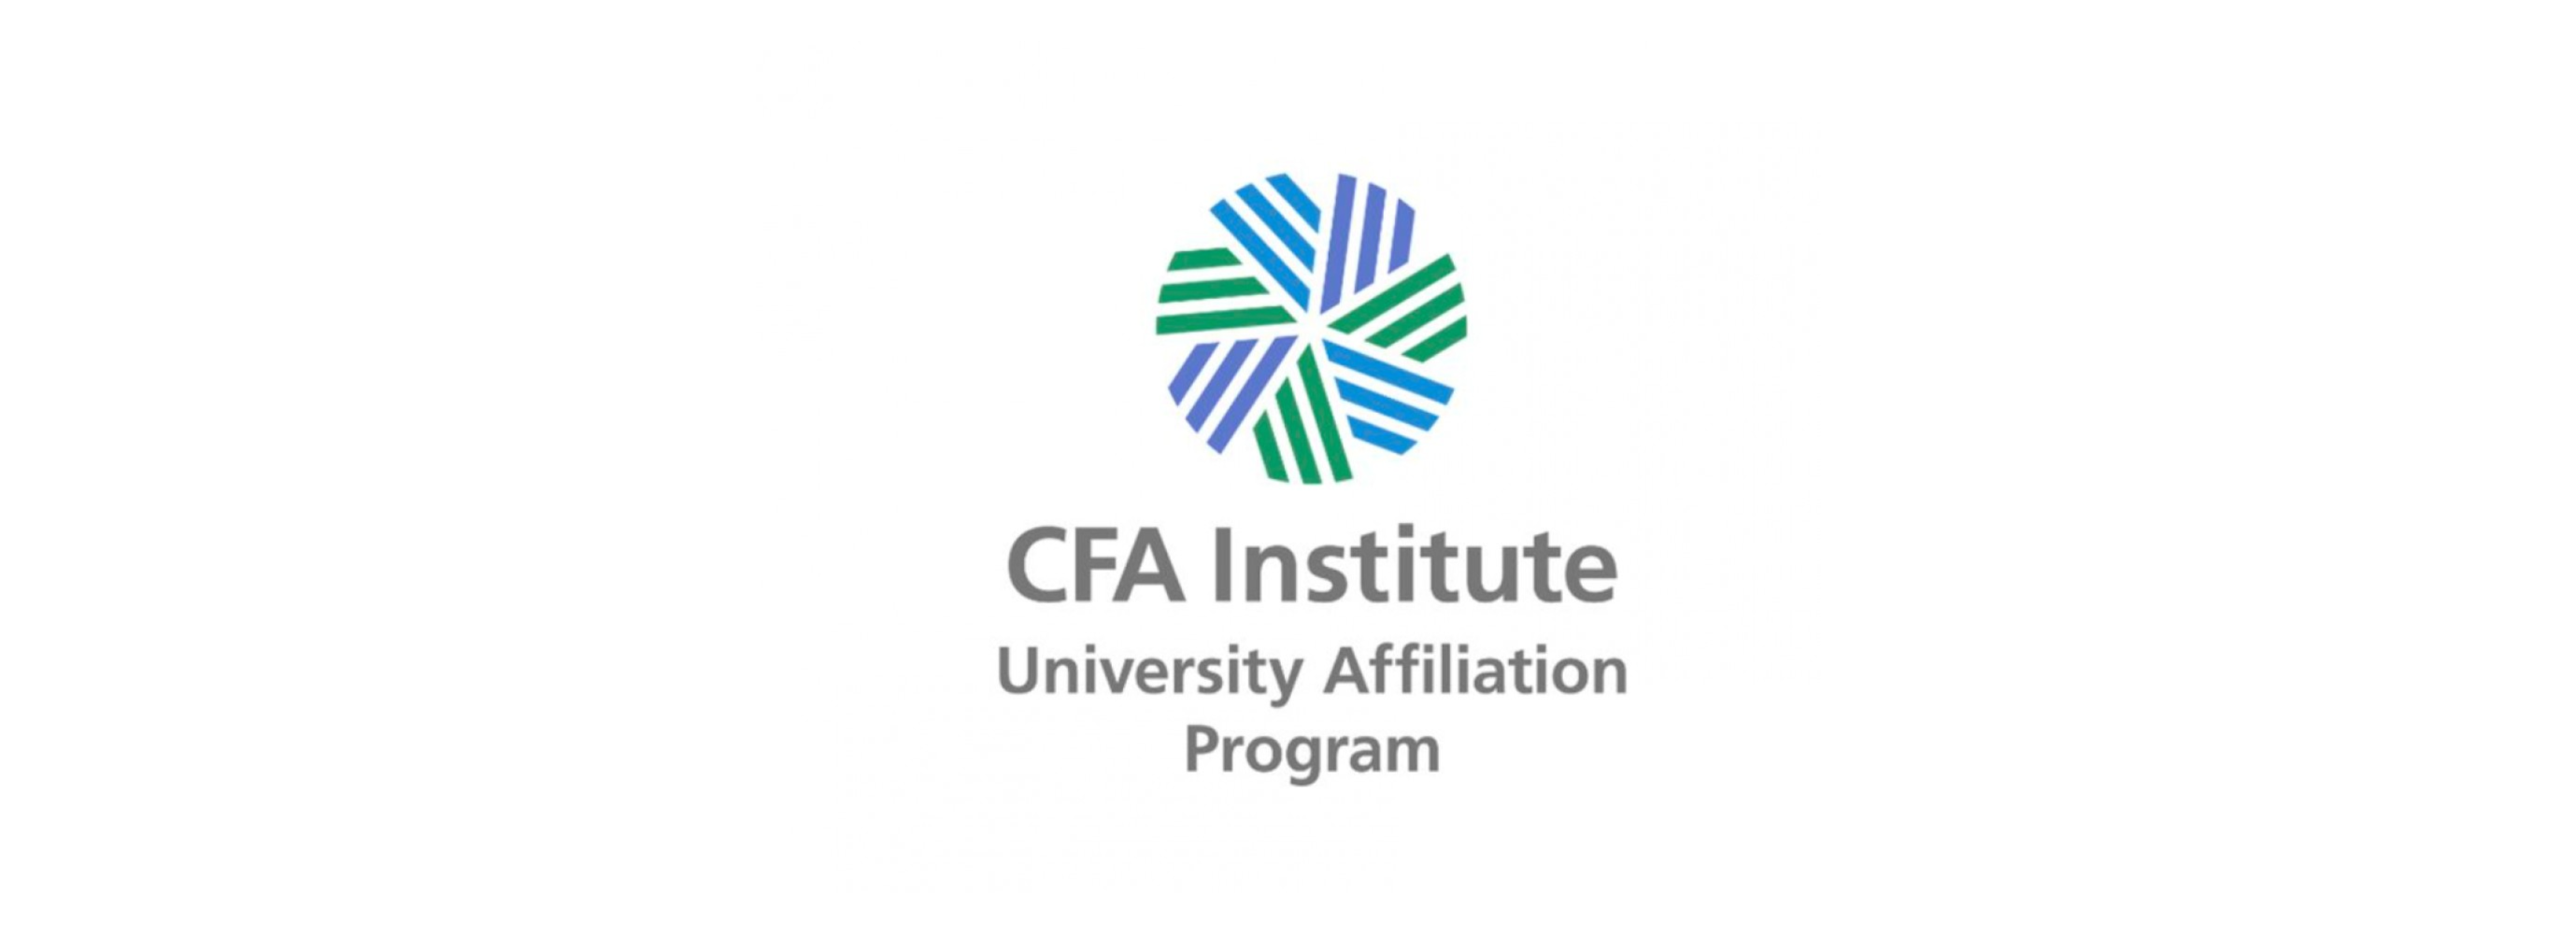 El Máster en Finanzas de la UC3M ha recibido reconocimiento por parte del prestigioso Instituto CFA.